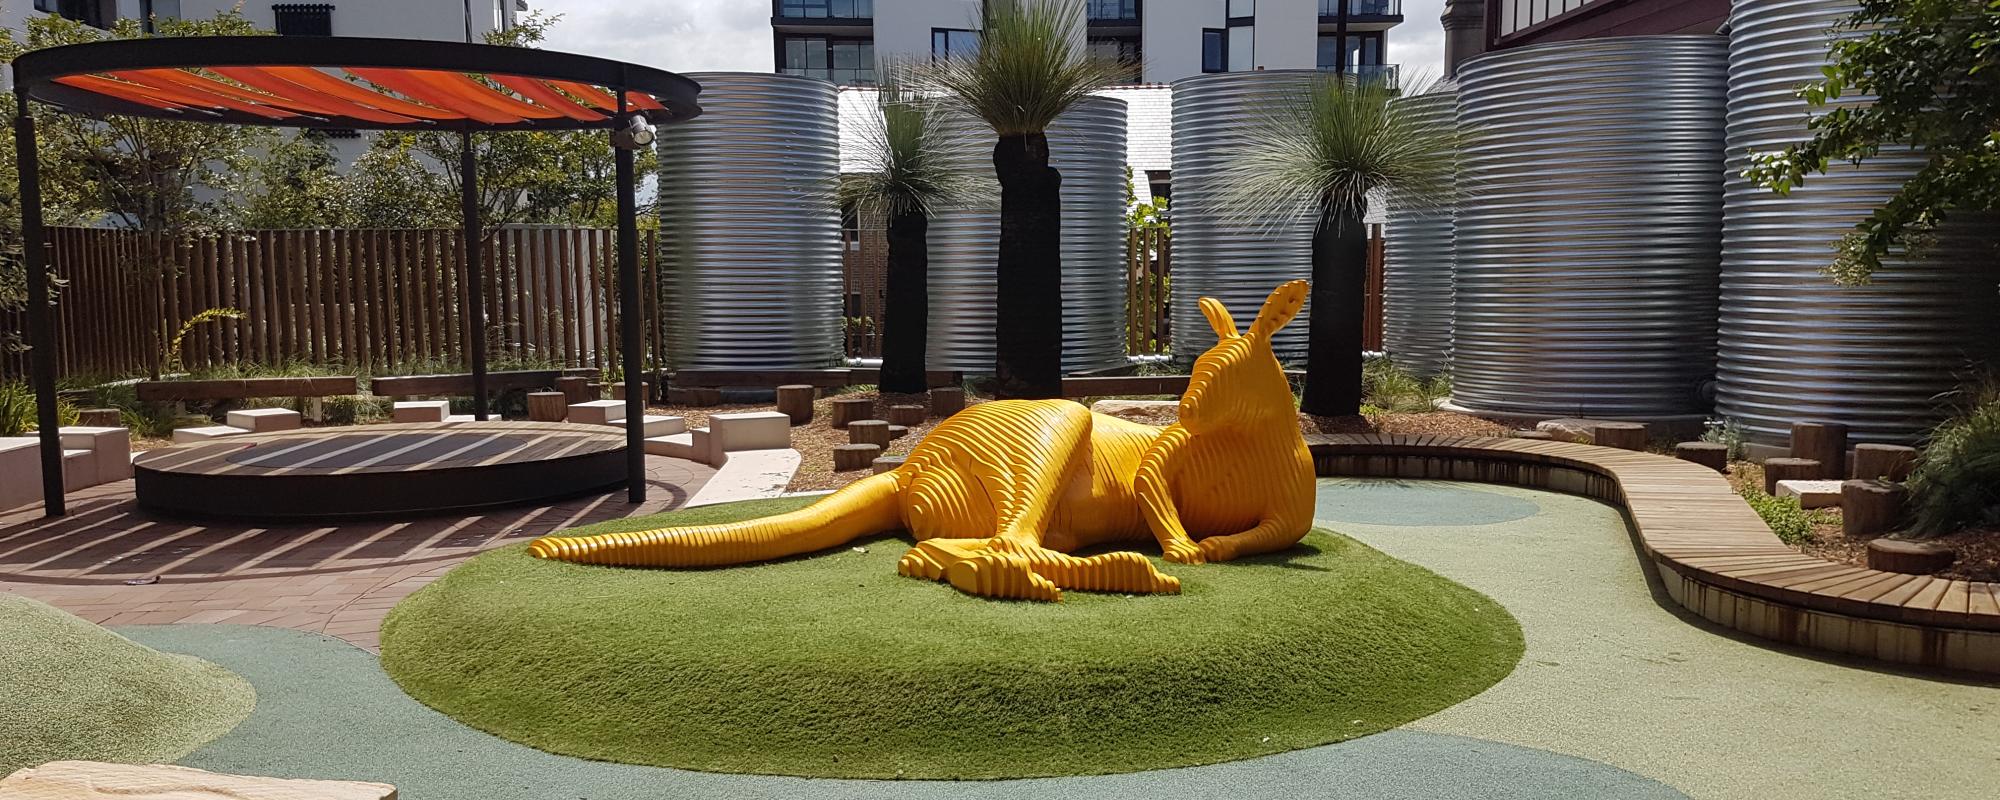 Large yellow sculpture of kangaroo outdoors